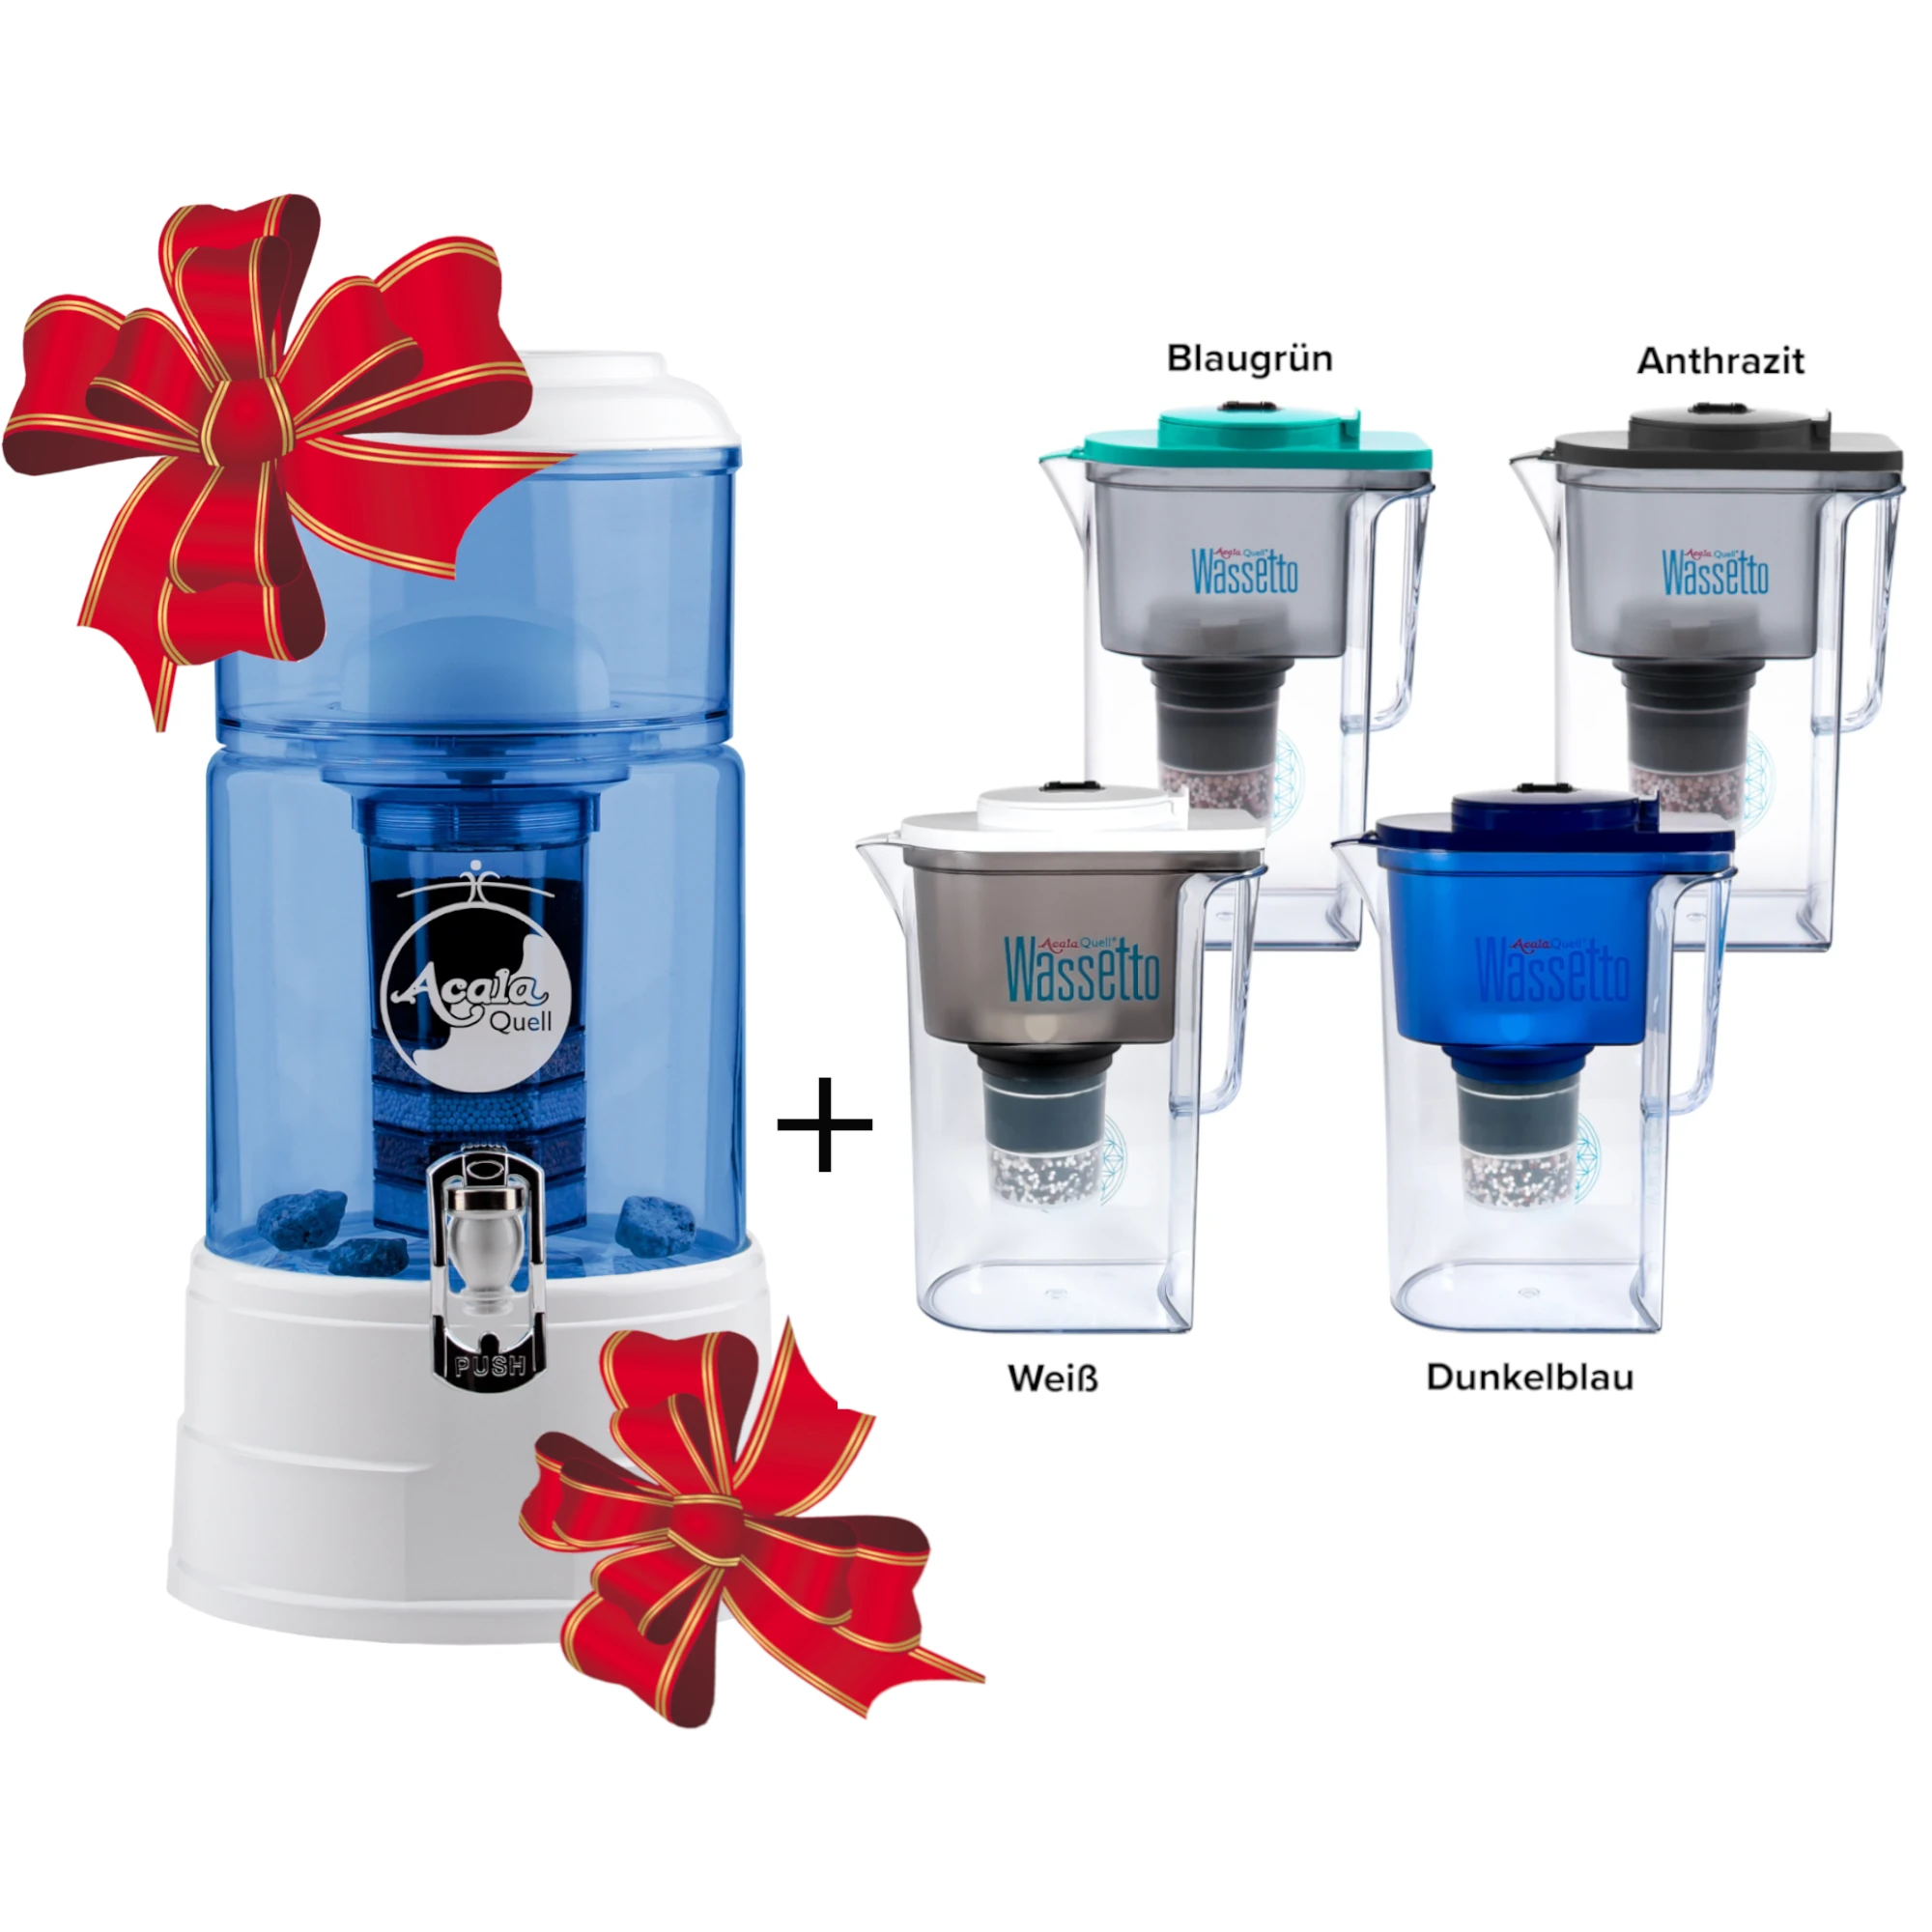 Standwasserfilter von Acala mit Glastank in blau, Deckel, Sockel und Wasserhahn in weiß. Daneben der Kannenfilter Wassetto in allen Farben. Der Filter hat zwei festliche Schleifen. Das Bild zeigt ein Weihnachtsangebot.